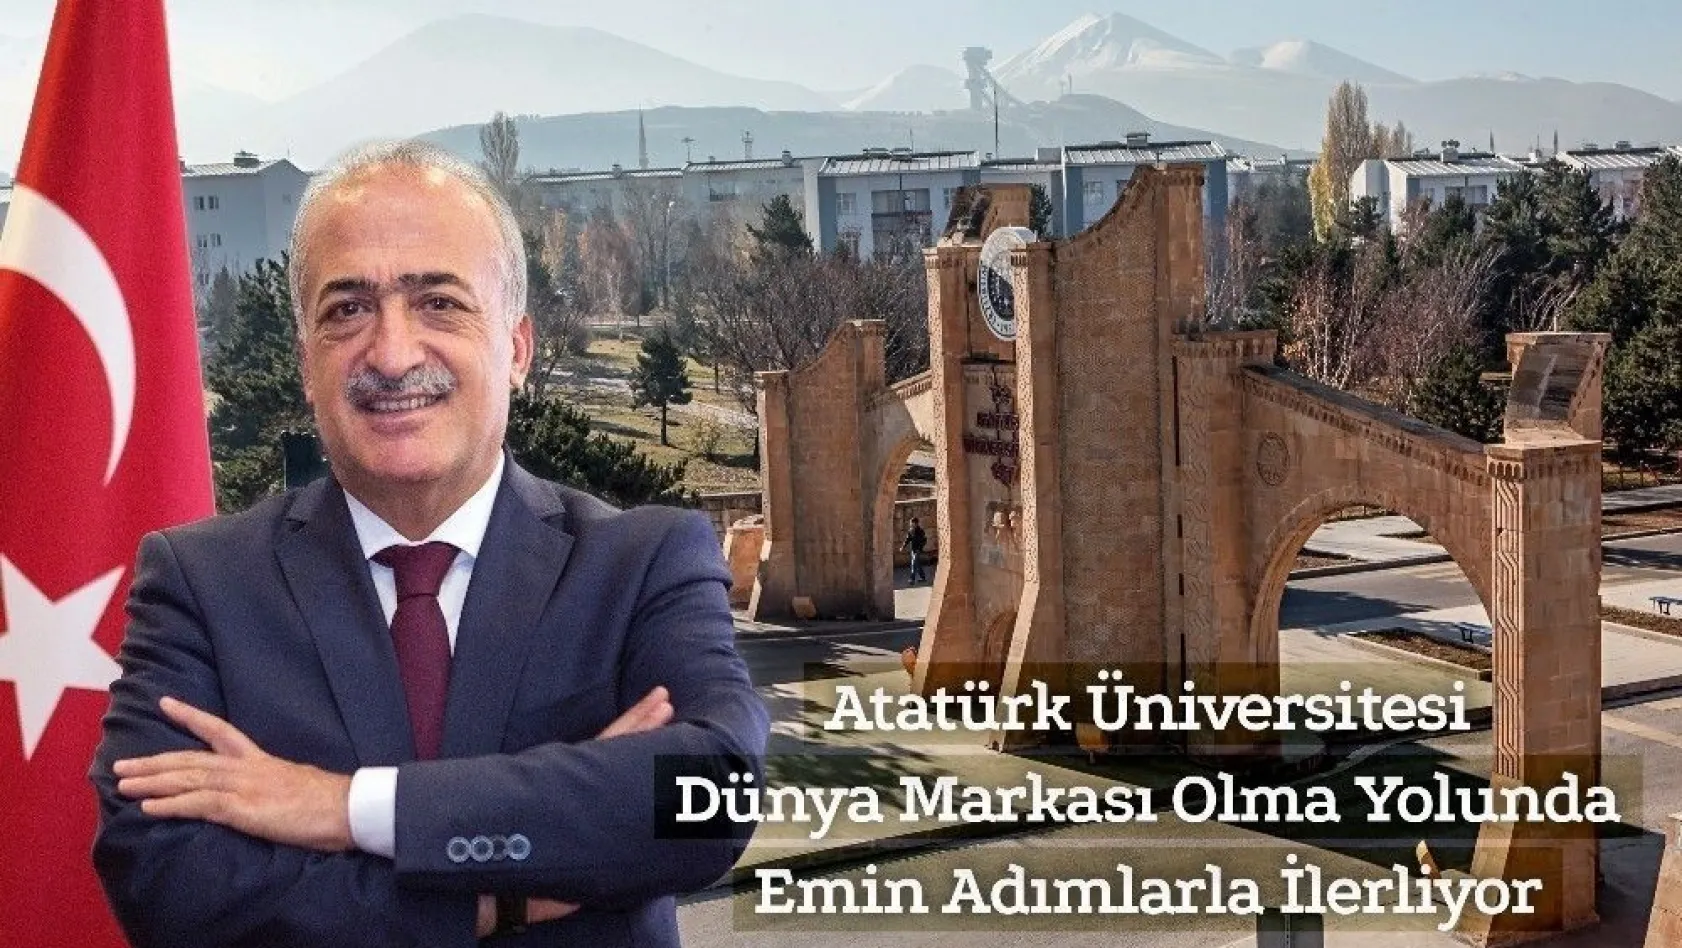 Atatürk Üniversitesi dünya markası olma yolunda emin adımlarla ilerliyor
